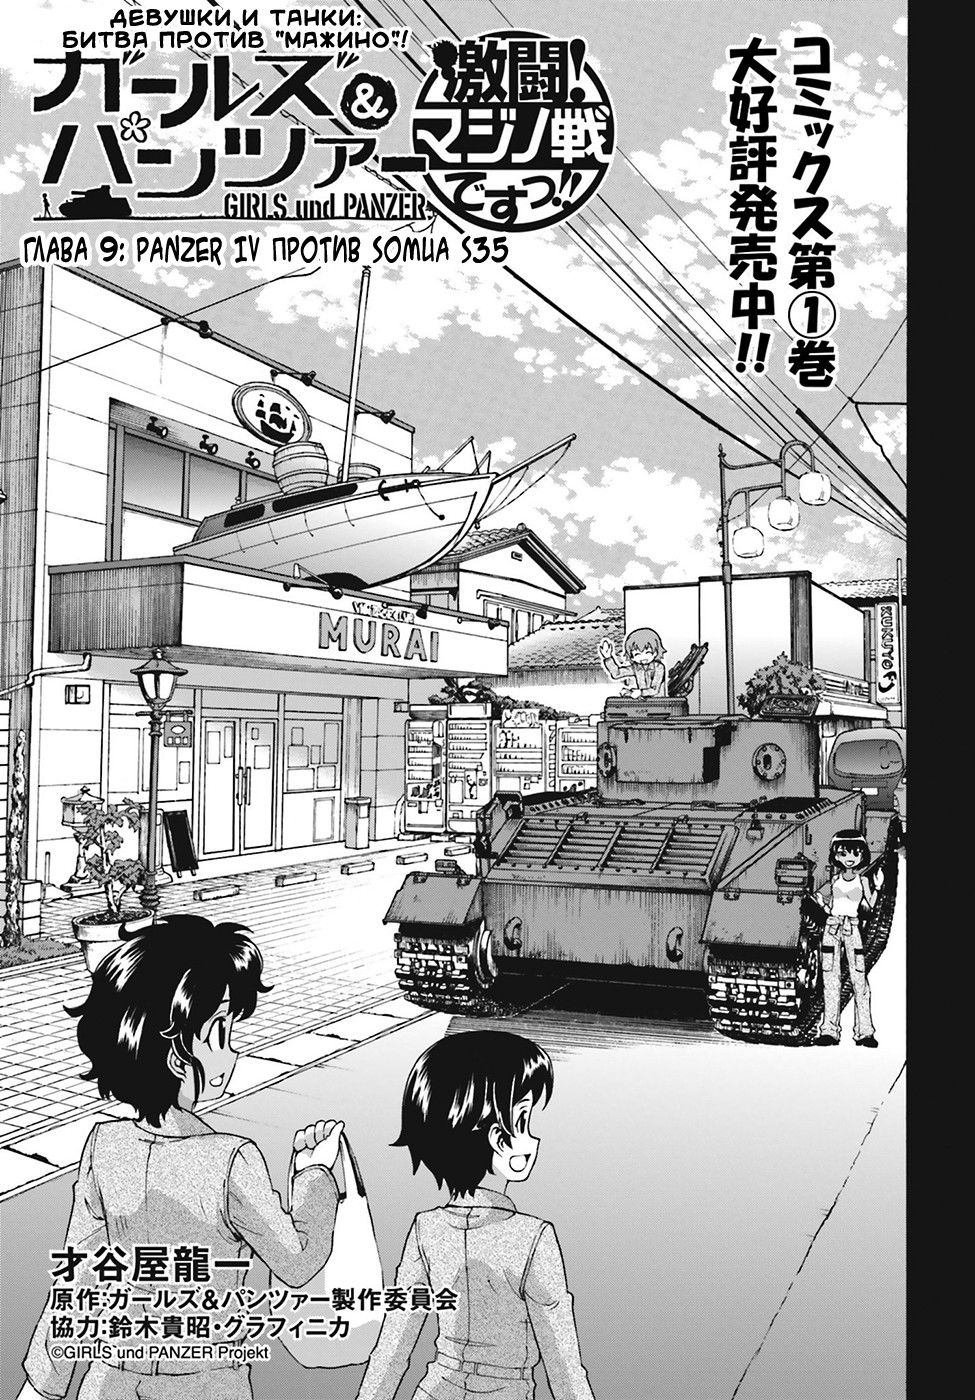 Девочки и танки: битва против «Мажино»! 2 - 9 Panzer IV против Somua S35